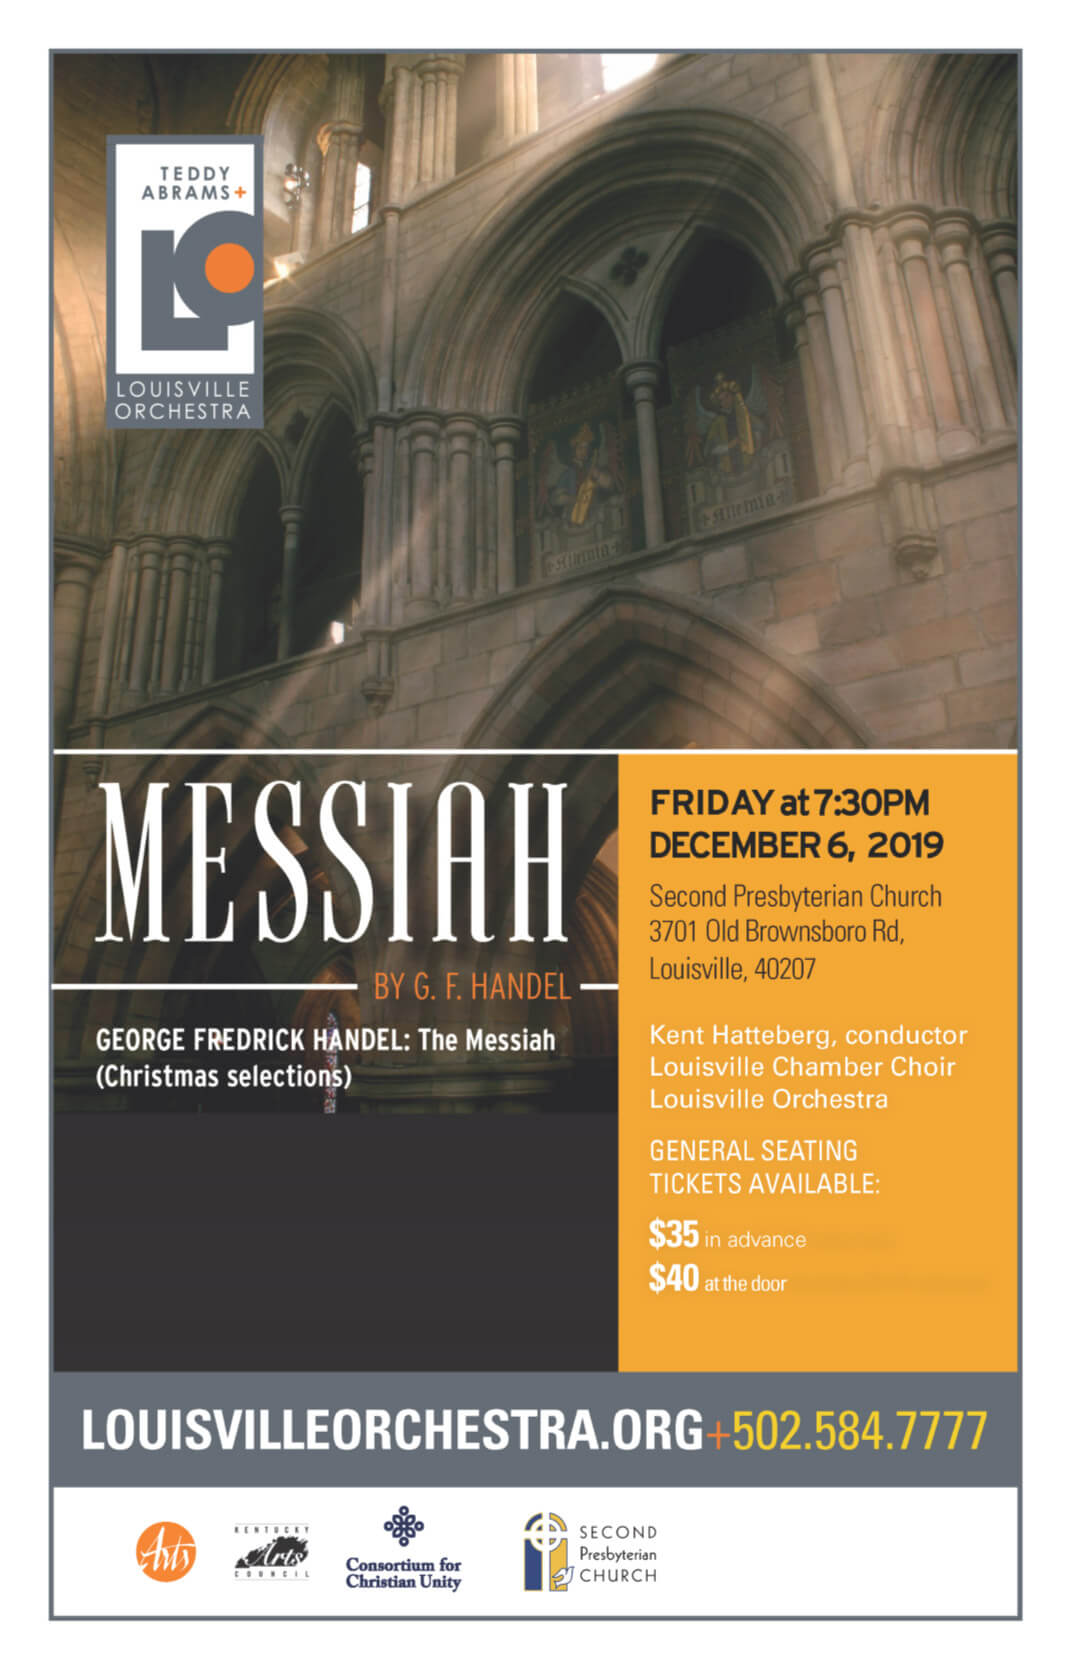 Messiah by G.F. Handel. Friday, Dec. 6, 2019 7:30pm